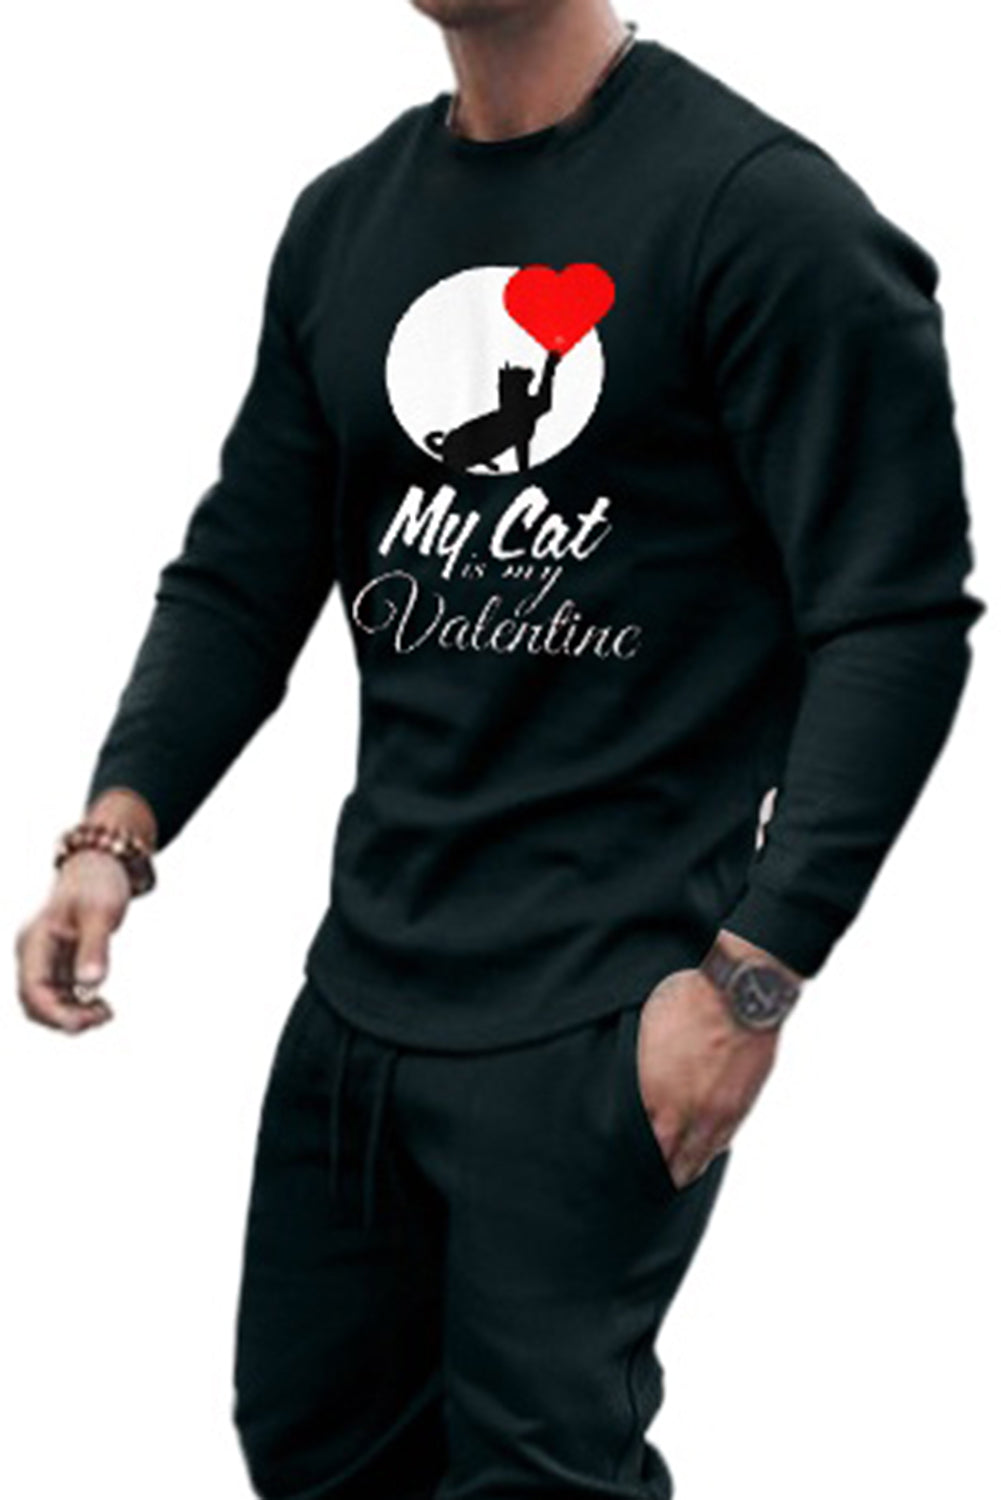 Men's Valentine Graphic Print Sweatshirt and Sweatpants Suit Men's Tops JT's Designer Fashion